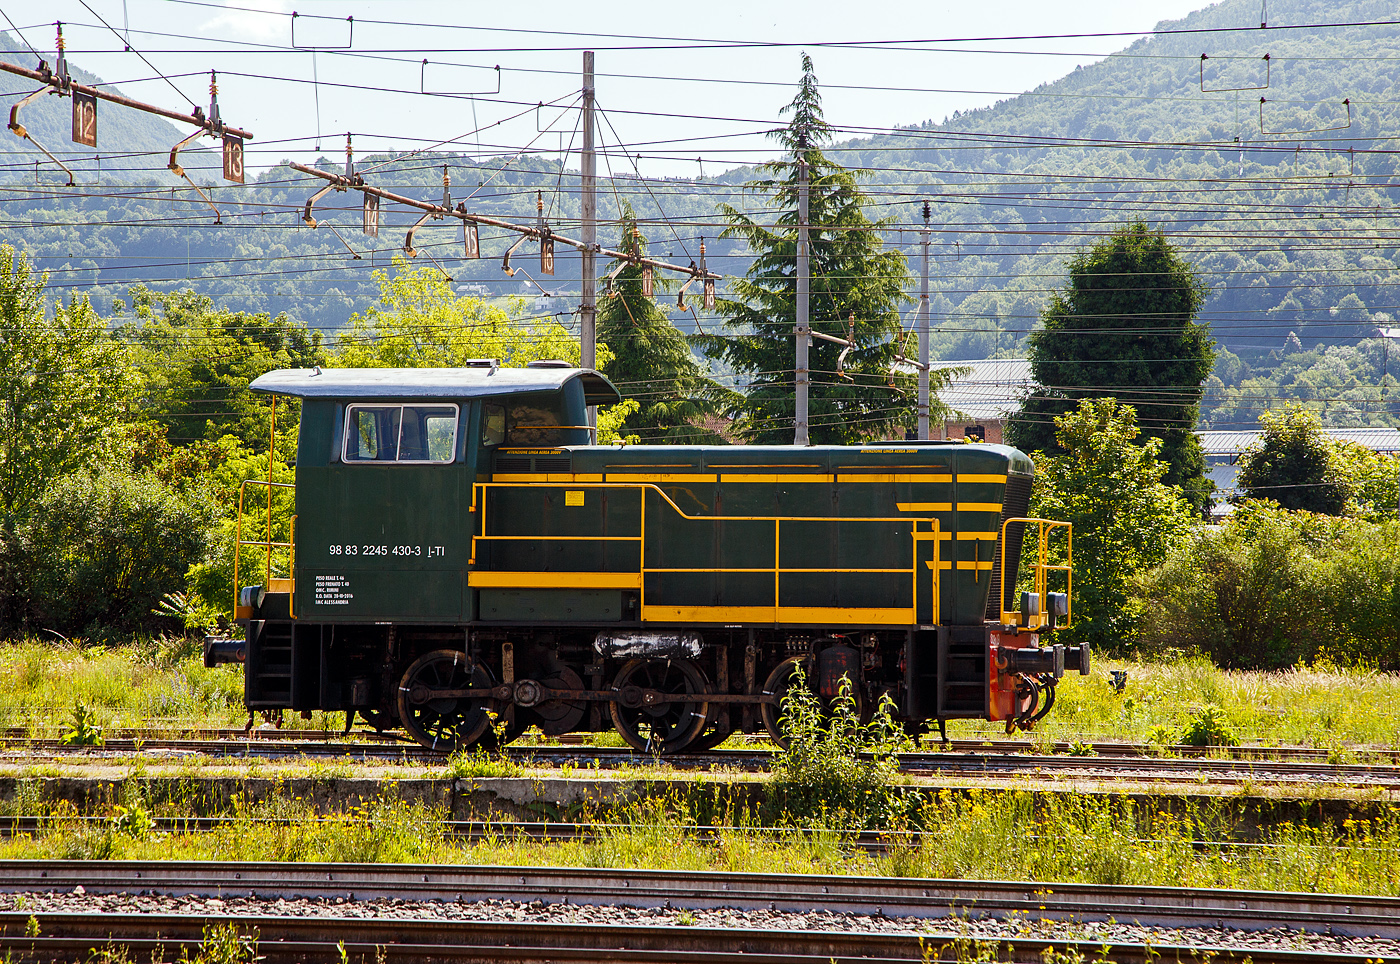 Die italienische Dieselrangierlok D.245.2230 (98 83 2245 430-3 I-TI) der Trenitalia (100-prozentige Tochtergesellschaft der FS), ist am 26.05.2023 im Bahnhof Domodossola abgestellt.

Die FS (Ferrovie dello Stato Italiane S.p.A. / Italienische Staatseisenbahnen AG) führte 1963 die Reihe D.245 als leistungsfähigste Rangierlok ein. Die dreiachsigen Kraftpakete (Achsfolge C) wurden von verschiedenen Firmen in unterschiedlichen Formen geliefert.

Die Formen ergeben sich aus den unterschiedlichen Serien, Herstellern und Baujahren und sind wie folgt:
245.6001–6124, Baujahre 1963 bis 1969, Cantieri Navali Riuniti/OM/Jenbacher Werke
245.0001–0058, Baujahre 1964 bis 1968, Hersteller: Antonio Badoni/OM
245.1001–1020, Baujahre 1964 bis 1968, Hersteller: OM/FIAT-Mercedes-Benz
245.2001–2020, Baujahr 1966, Hersteller: Officine Meccaniche Reggiane/Breda
245.2101–2286, Baujahre 1976 bis 1987, Hersteller: Breda/Antonio Badoni/Greco/Ferrosud/IMMER
245.8001–8003, Baujahre 1958 bis 1962, dies waren später von der FS von einem Unternehmen erworben drei Lokomotiven vom Typ Jung R42C, die später zur Hafenbahn Genua kamen.

Sie hat ein hydraulisches Getriebe und Stangenantrieb. Die Achsen werden mittels Kuppelstangen von einer Blindwelle (zwischen der 2. Und 3. Achse) angetrieben. Die Lok hat einen, von 440 auf 370 kW, gedrosselten 12-Zylinderdieselmotor vom Typ Breda ID36, der die Leistung auf das Voith Strömungsgetriebe (hydrostatisch), vom Typ L24. Die Dauerabtriebsleistung beträgt 275 kW. Die Kraftübertragung erfolgt über eine zwischen dem 2. und 3. Radsatz liegenden Blindwelle, Blindwellenkurbeln an den beiden Blindwellenenden und Kuppelstangen auf die Räder der Lok.

Technische Daten:
Spurweite: 1.435 mm (Normalspur)
Achsformel: C
Länge über Puffer: 9.240 mm
Achsabstände: 1.500 / 2.500 mm
Eigengewicht: 46 t
Höchstgeschwindigkeit: 64 km/h (im Rangiergang 32 km/h)
Motorleistung: 370 kW
Dauerleistung: 275 kW
Treibraddurchmesser: 1.040 mm  